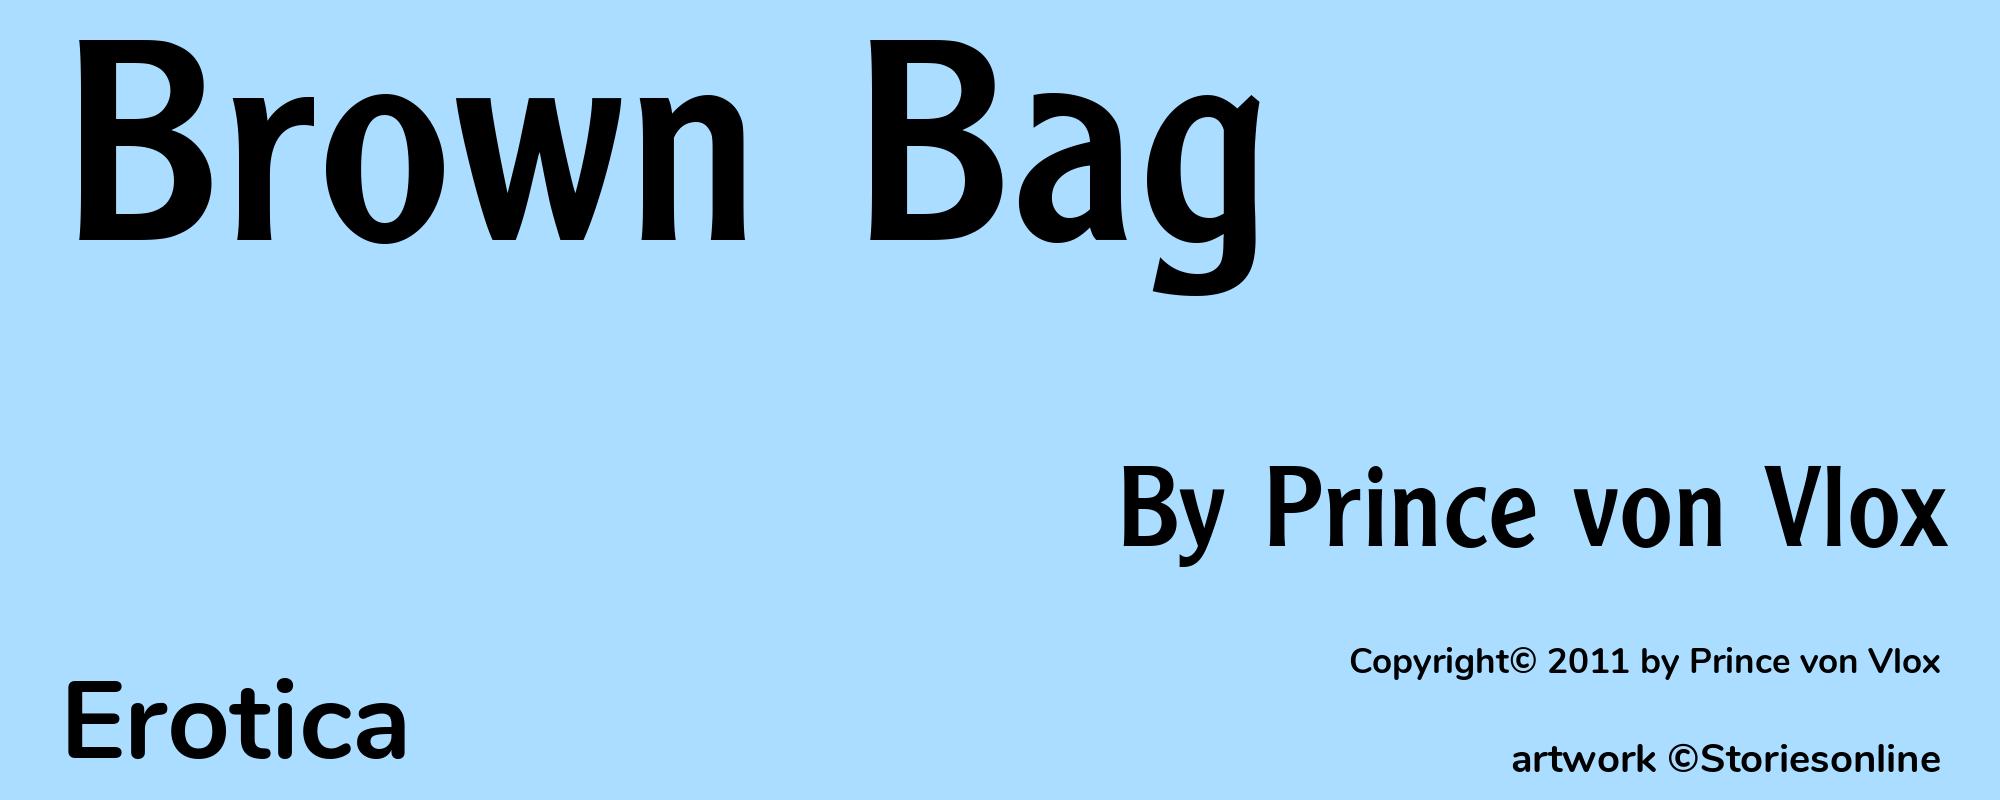 Brown Bag - Cover